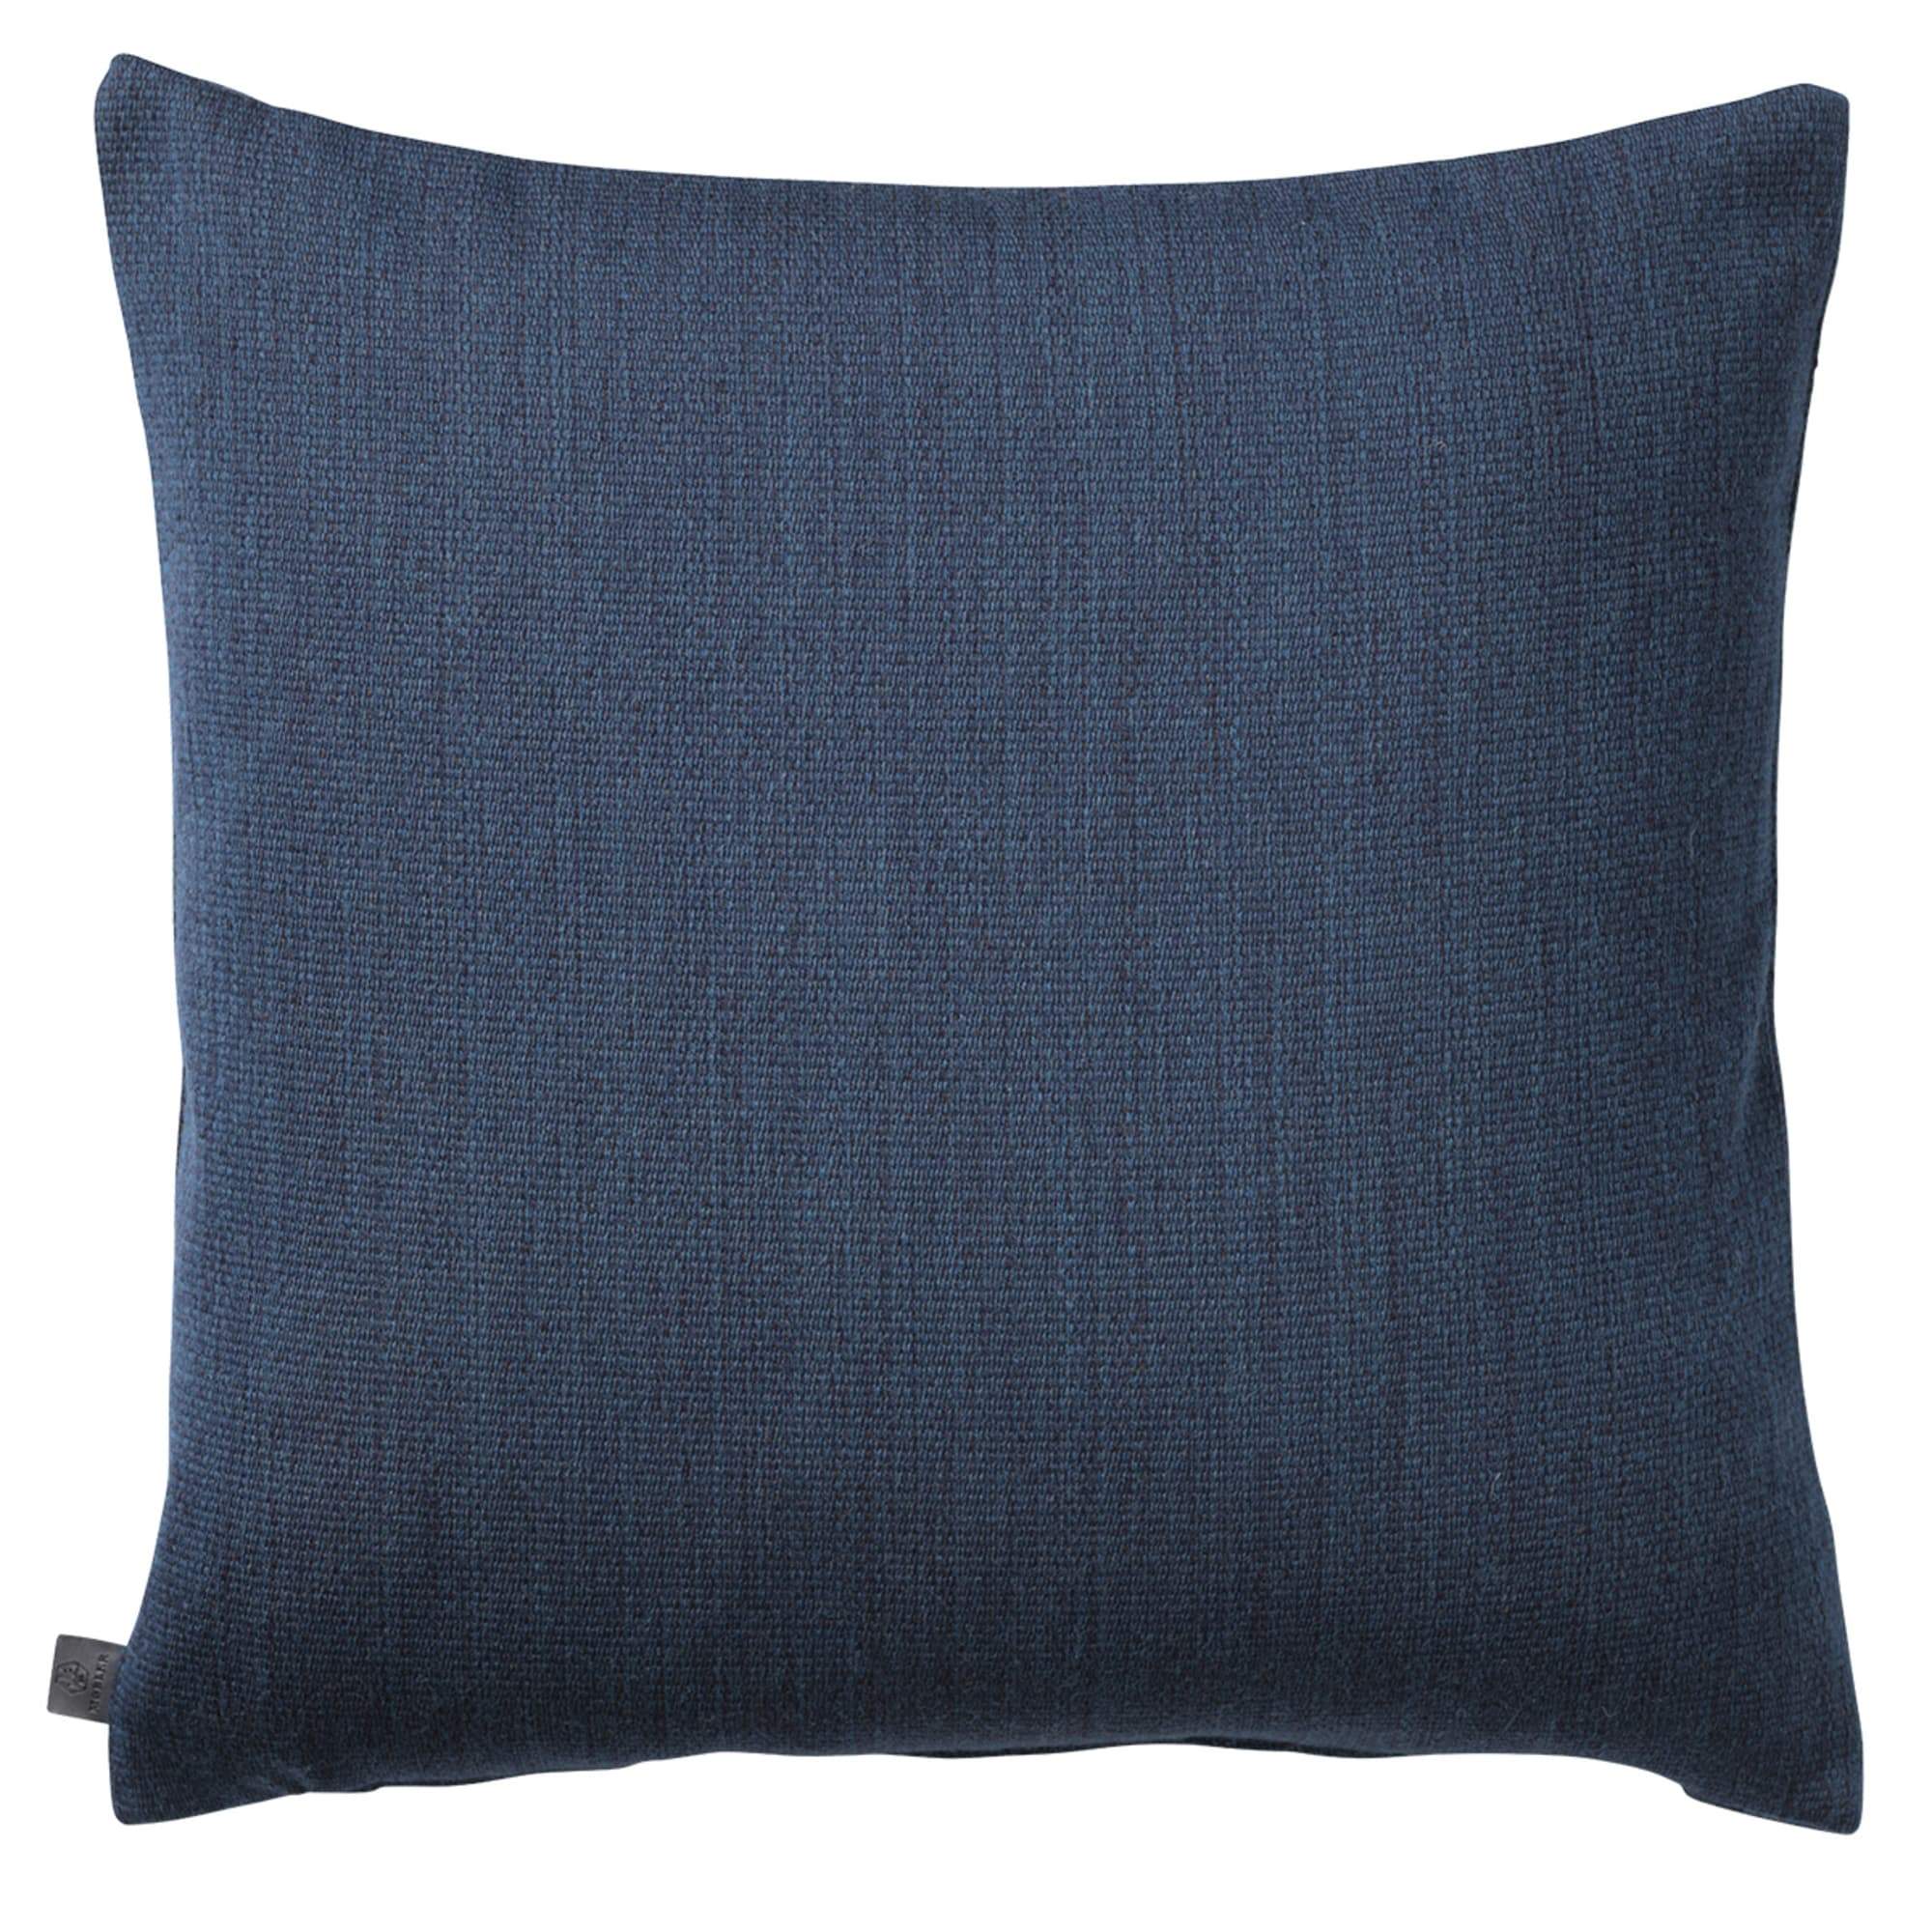 Fdb Møbler R17 Råbjerg Cushion Bleu, 50x50cm